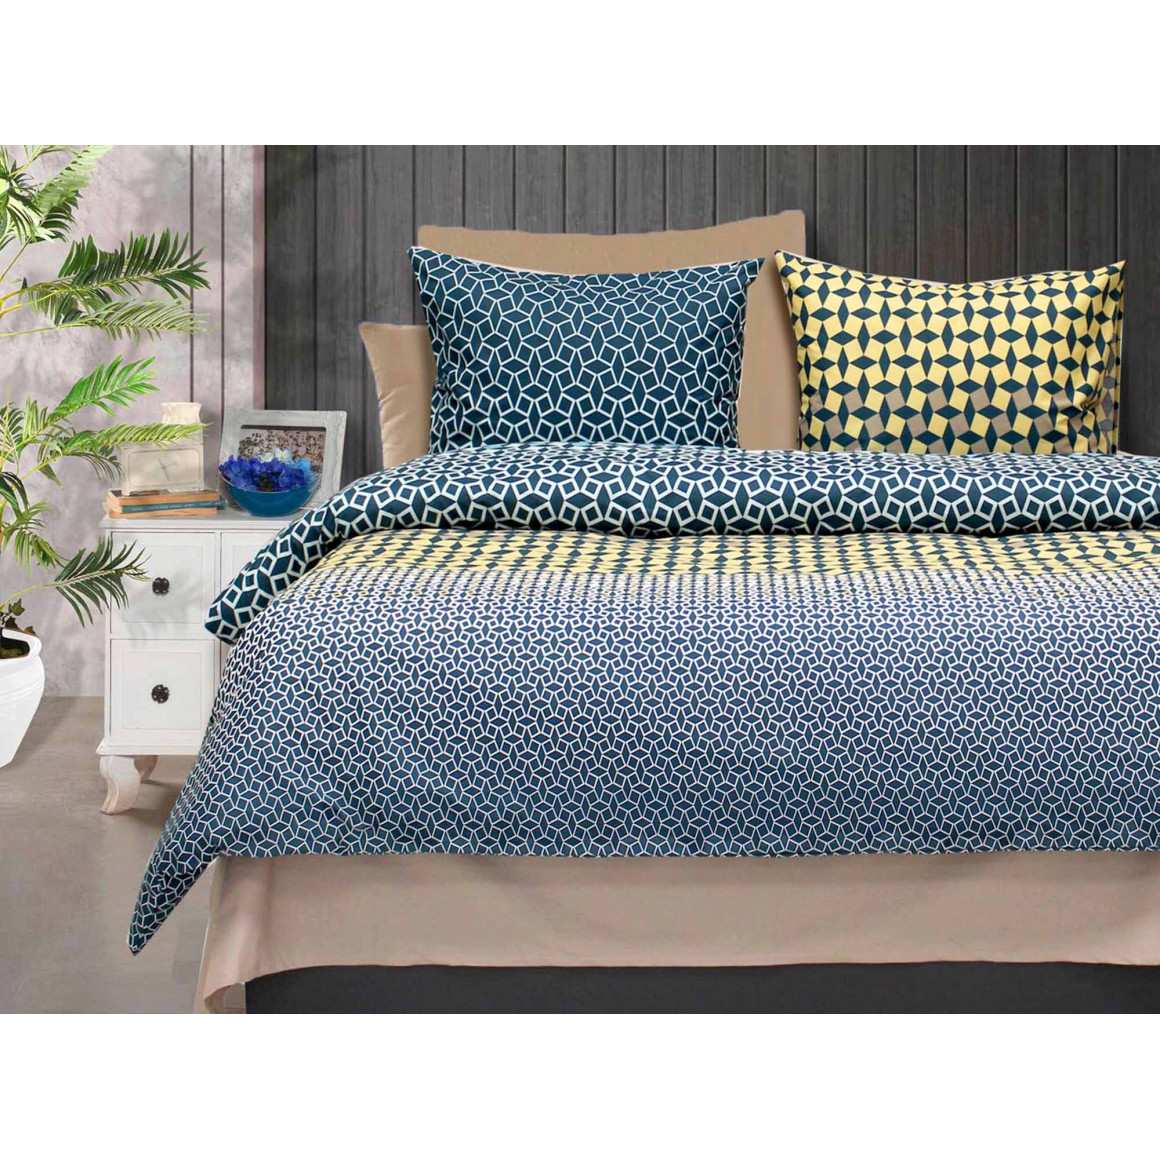 bed linen RESTFUL RFR 26126 V7 FA